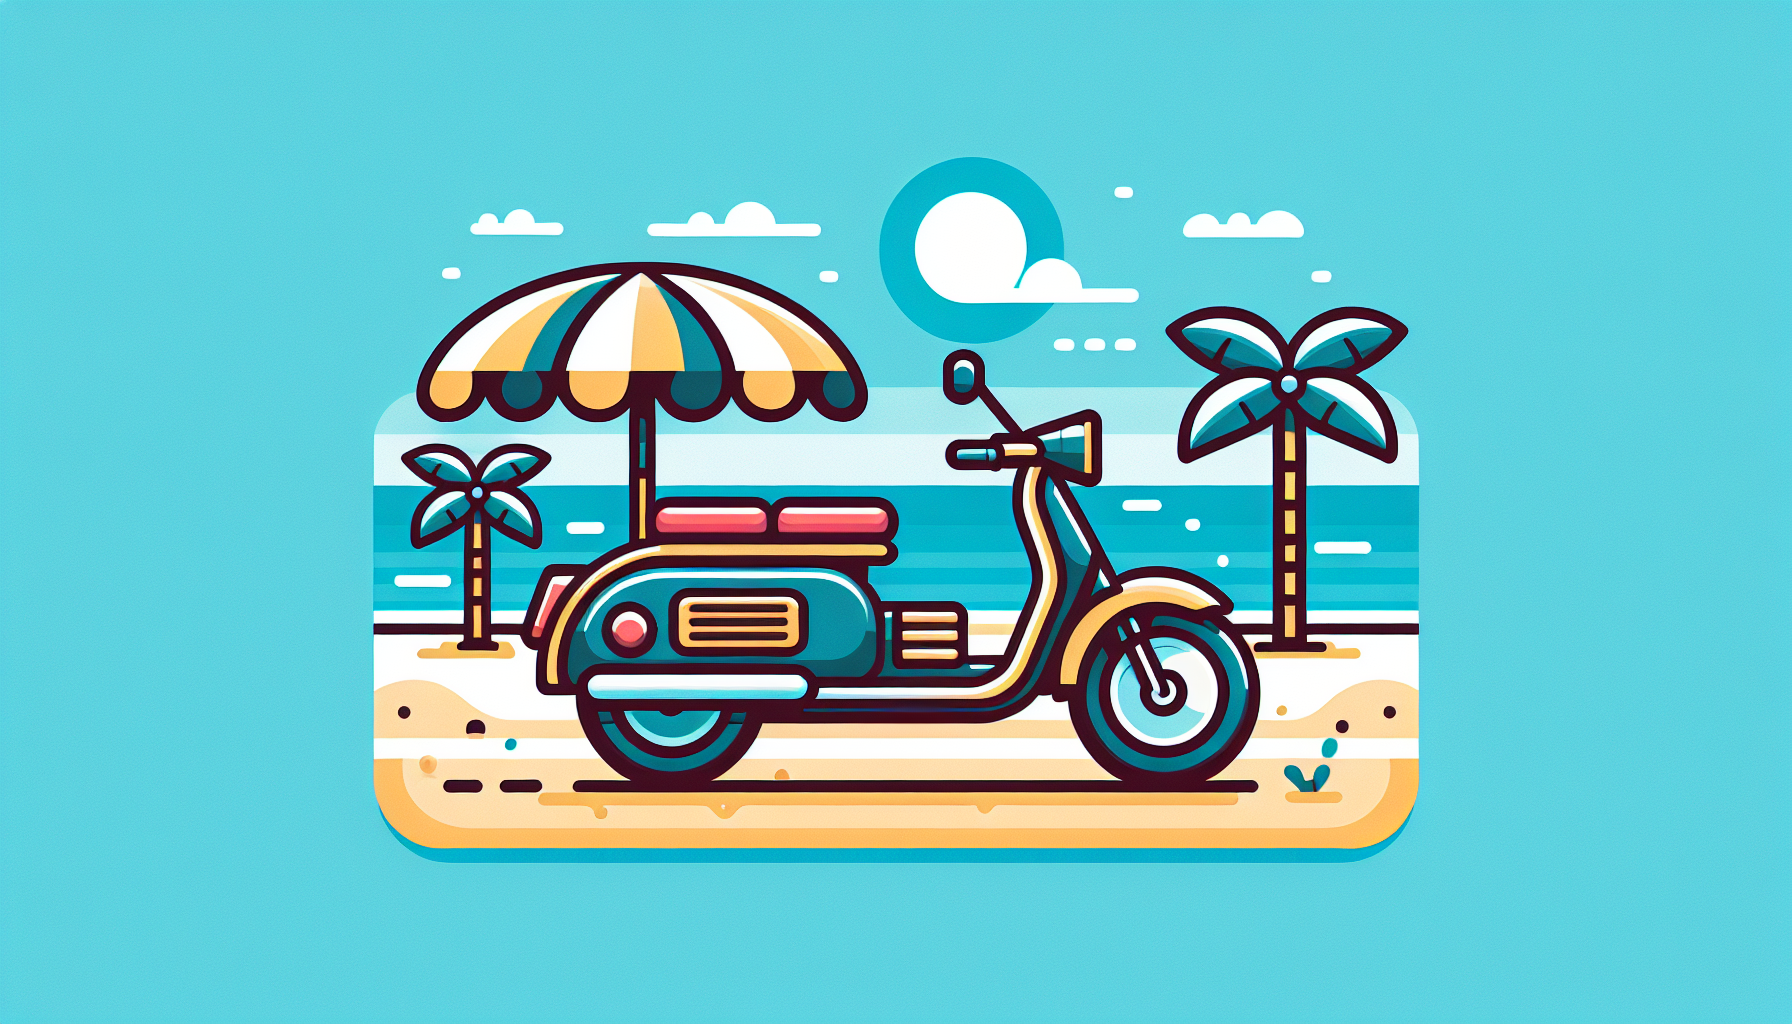 Xe máy: Là phương tiện giao thông phổ biến và linh hoạt khi du lịch biển. Bạn có thể thuê xe máy tại các điểm thuê xe hoặc sử dụng dịch vụ taxi để di chuyển dễ dàng và thoải mái.